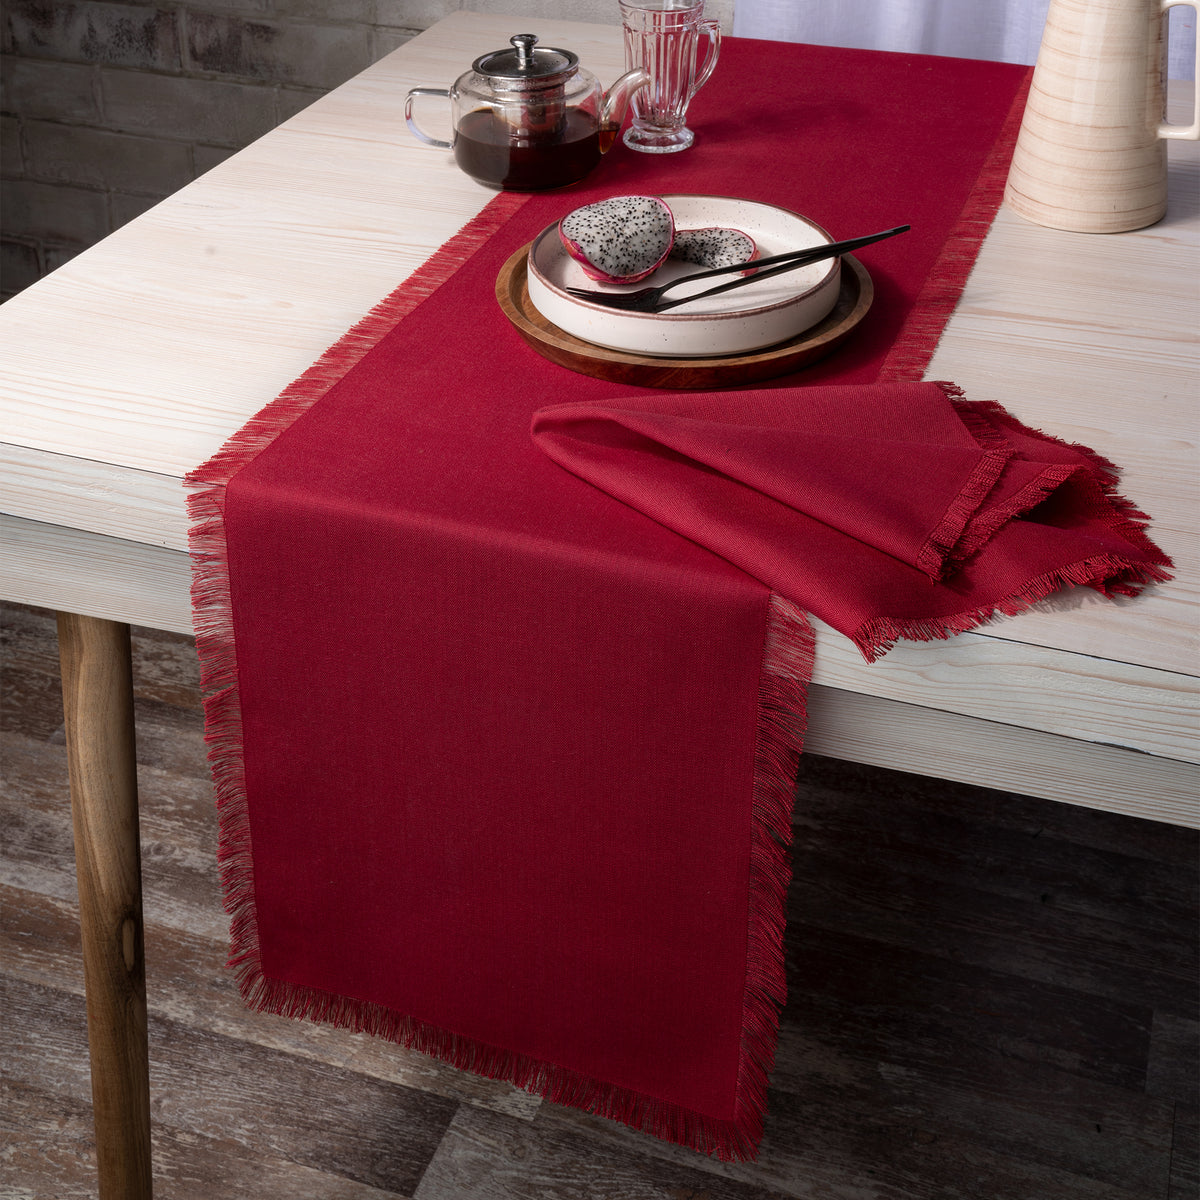 Red Faux Linen Table Runner - Fringe